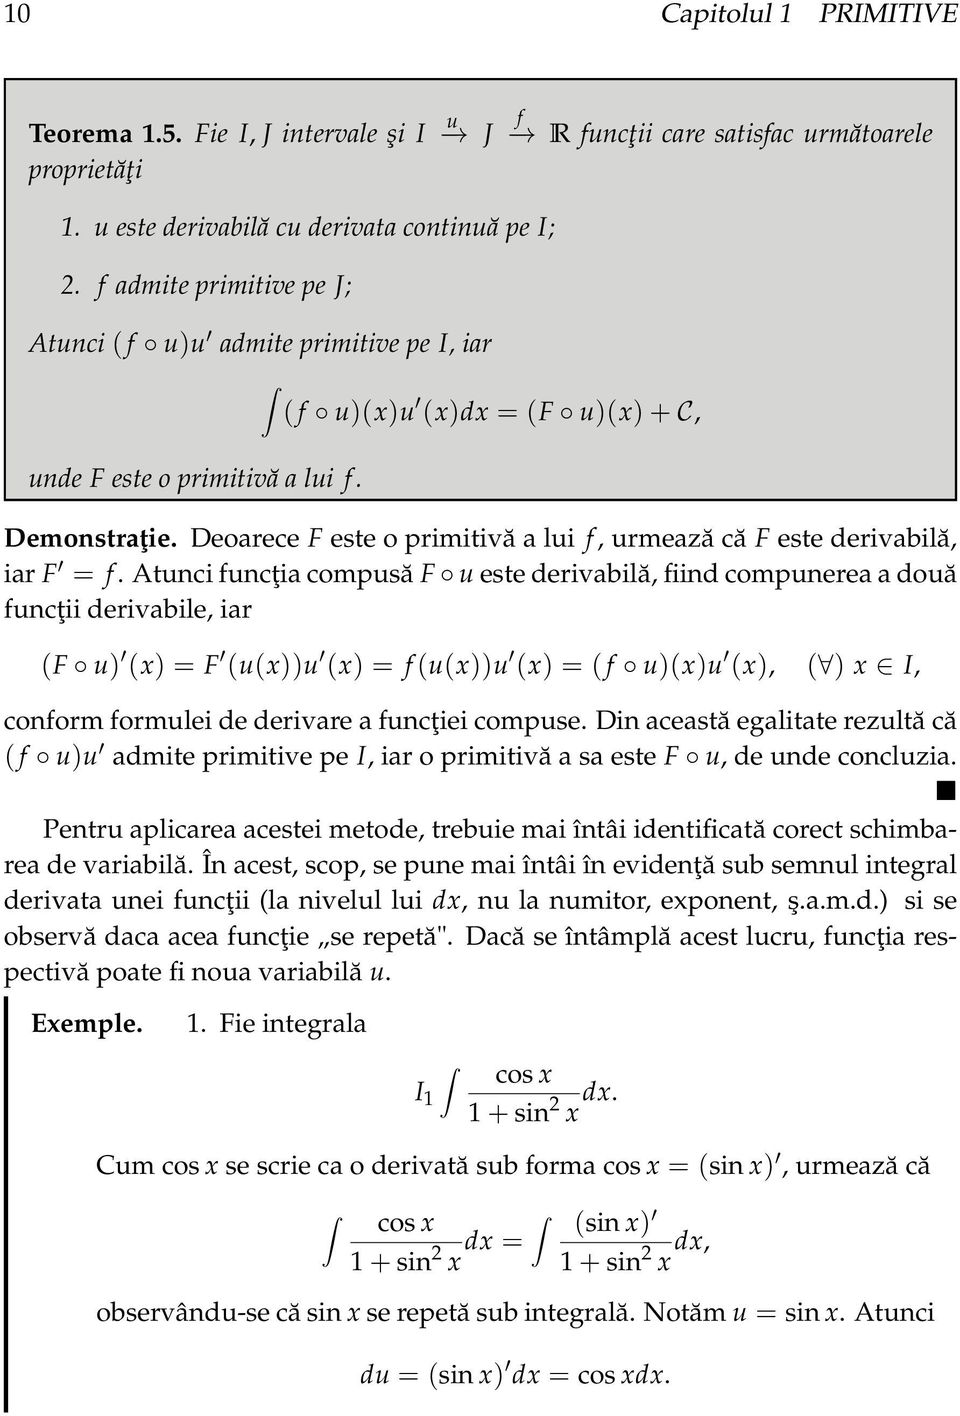 Deorece F este o primitivă lui f, urmeză că F este derivbilă, ir F = f.